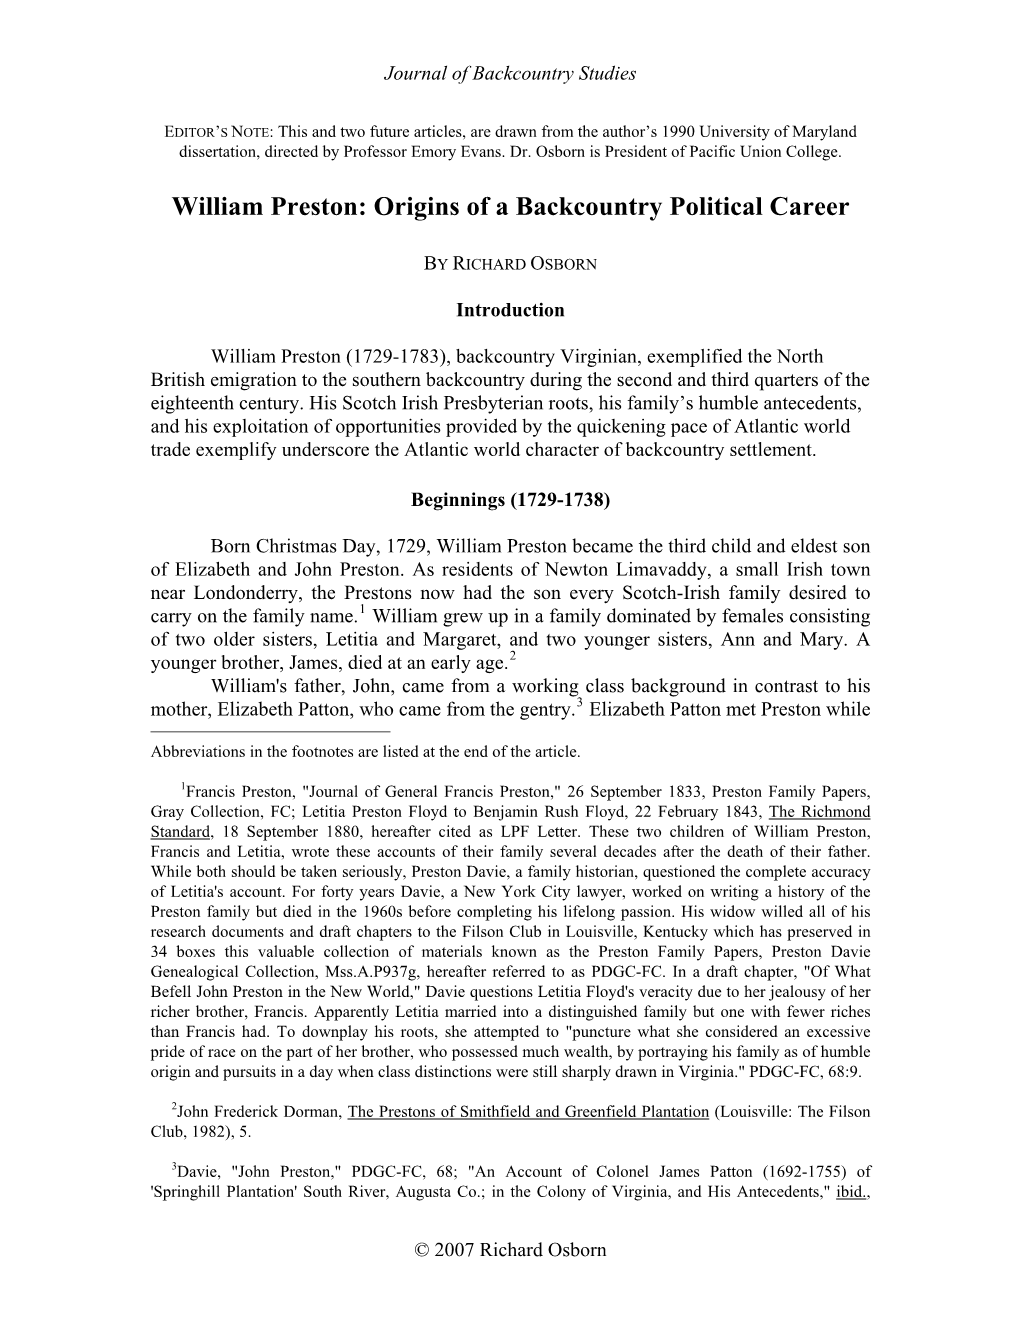 William Preston: Origins of a Backcountry Political Career